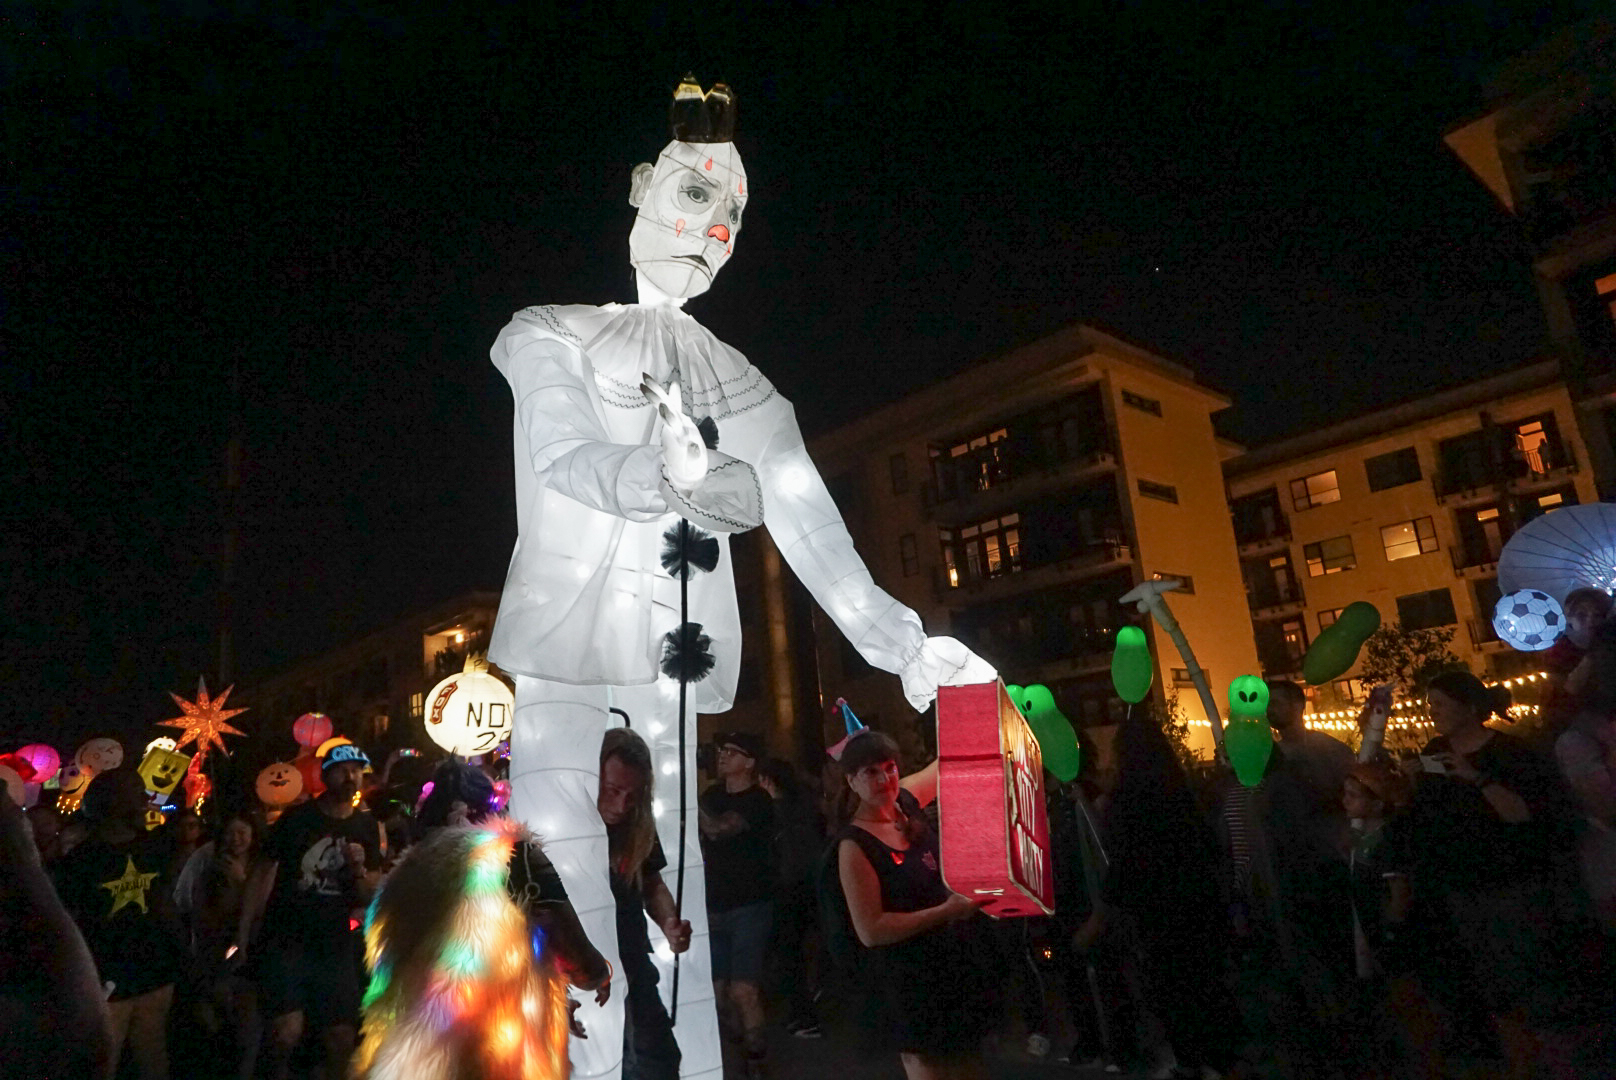 Atlanta Beltline Lantern Parade Captivates Thousands The Emory Wheel